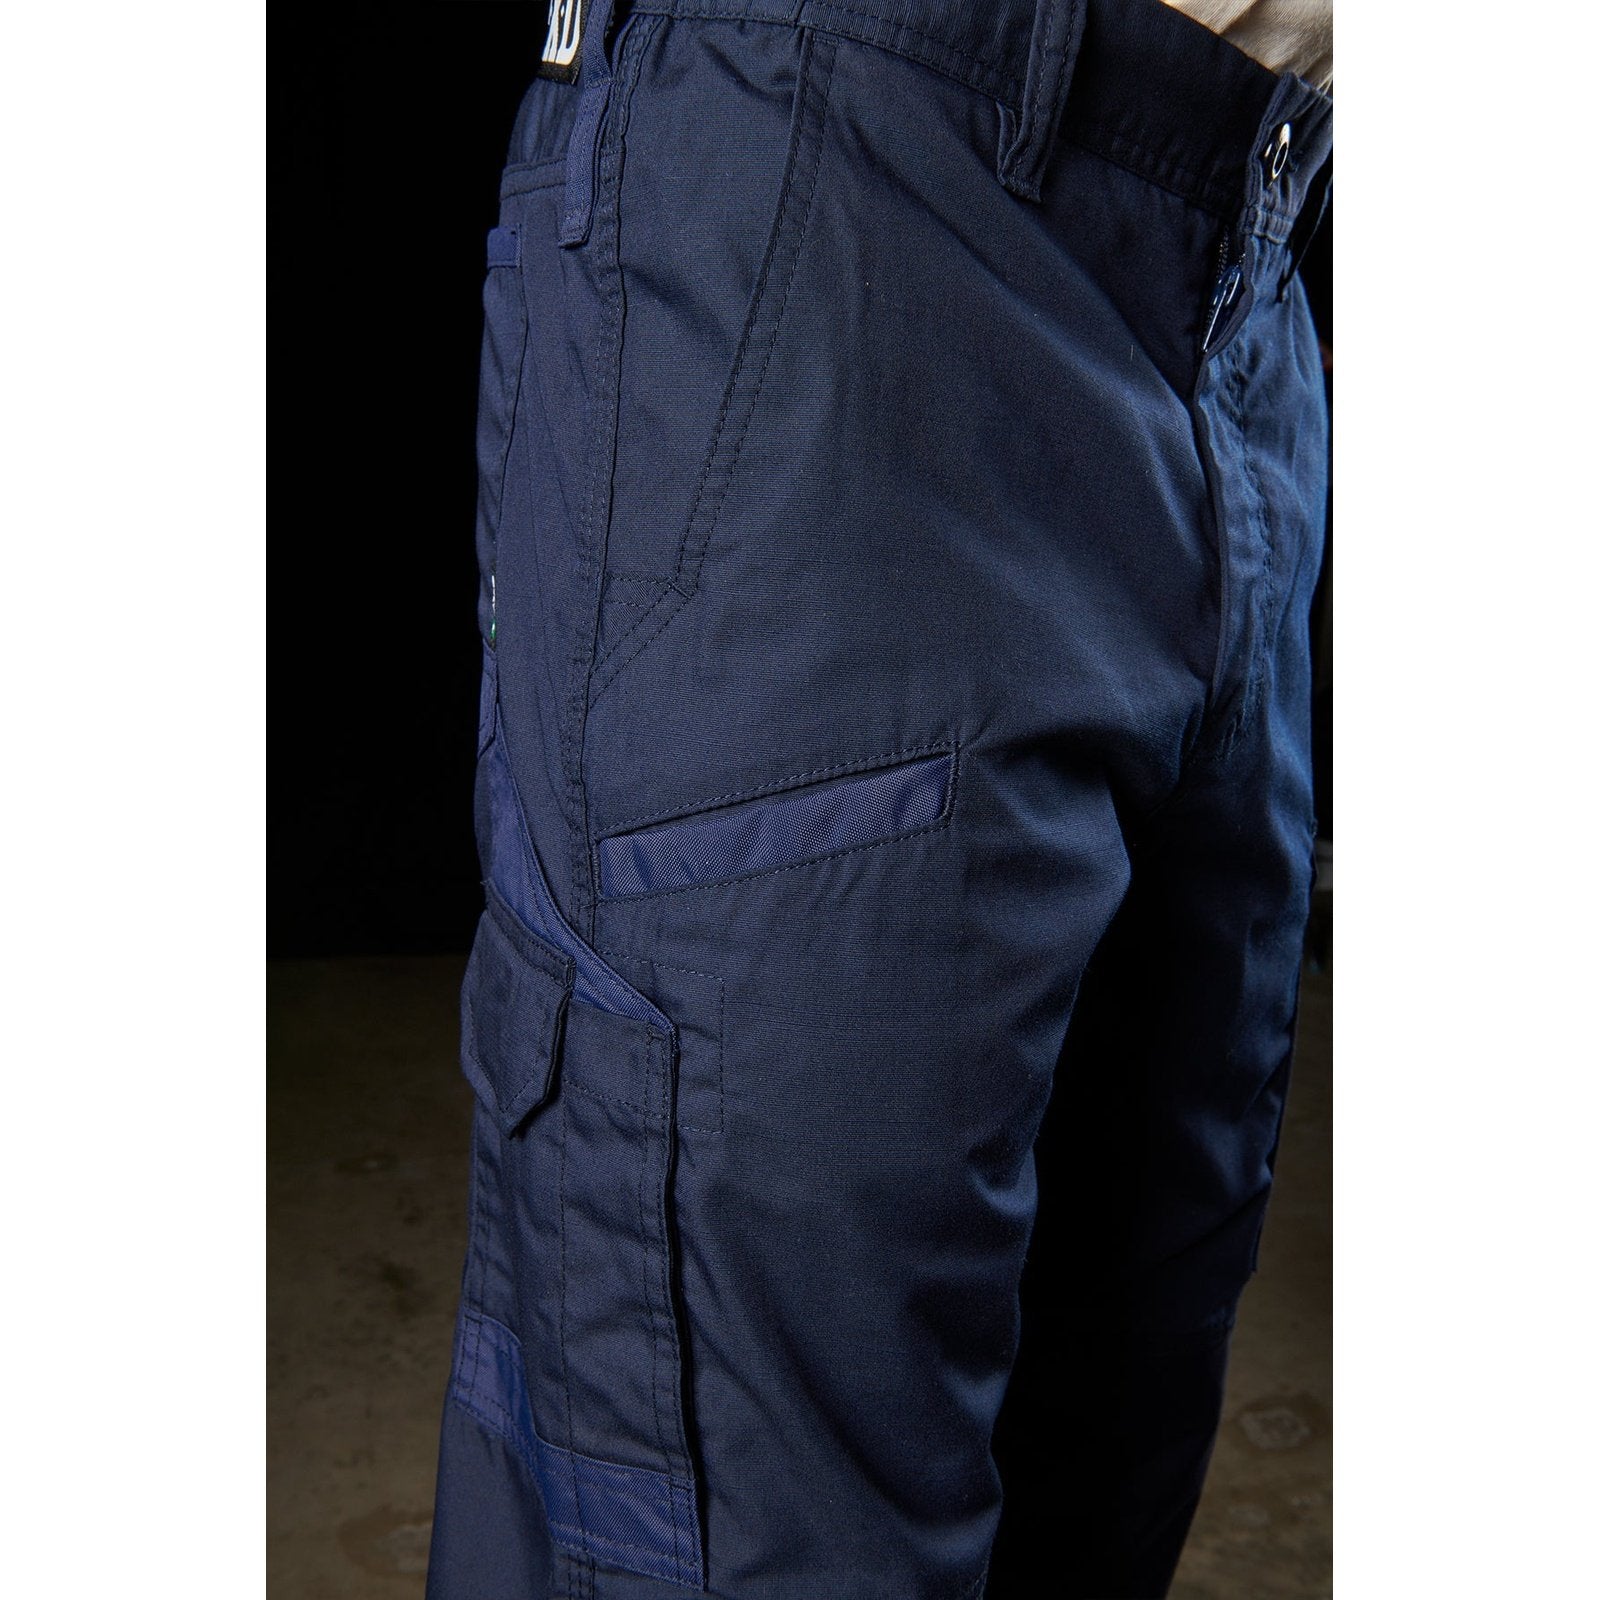 FXD Lightweight Work Pant WP-5 | Blue Heeler Boots